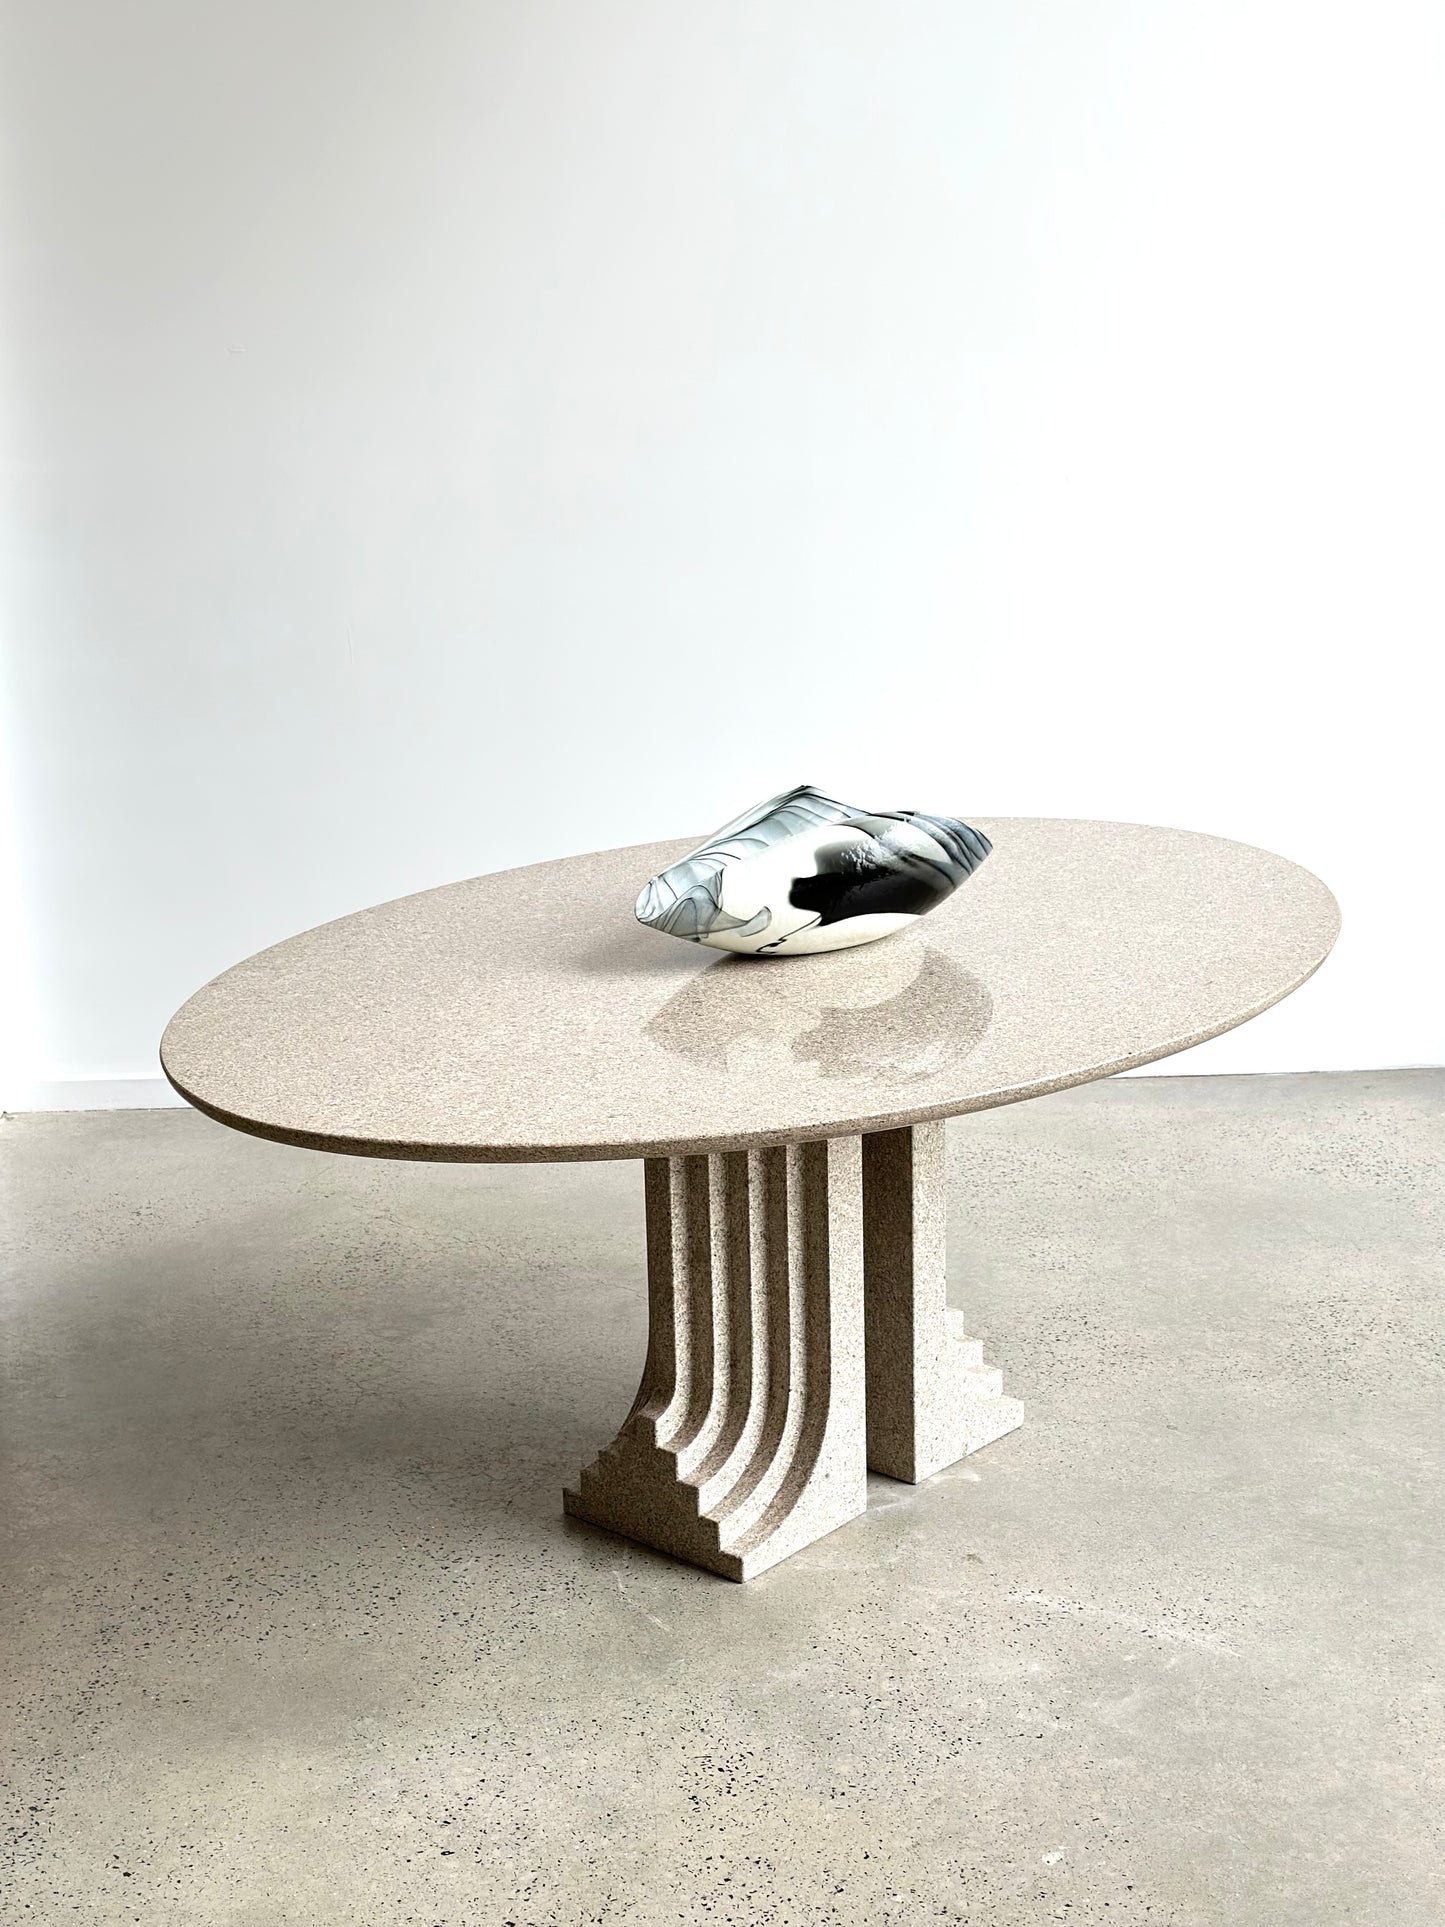 "Samo" by Carlo Scarpa for Simon Gavina, Granite Oval Dining Table, 1971